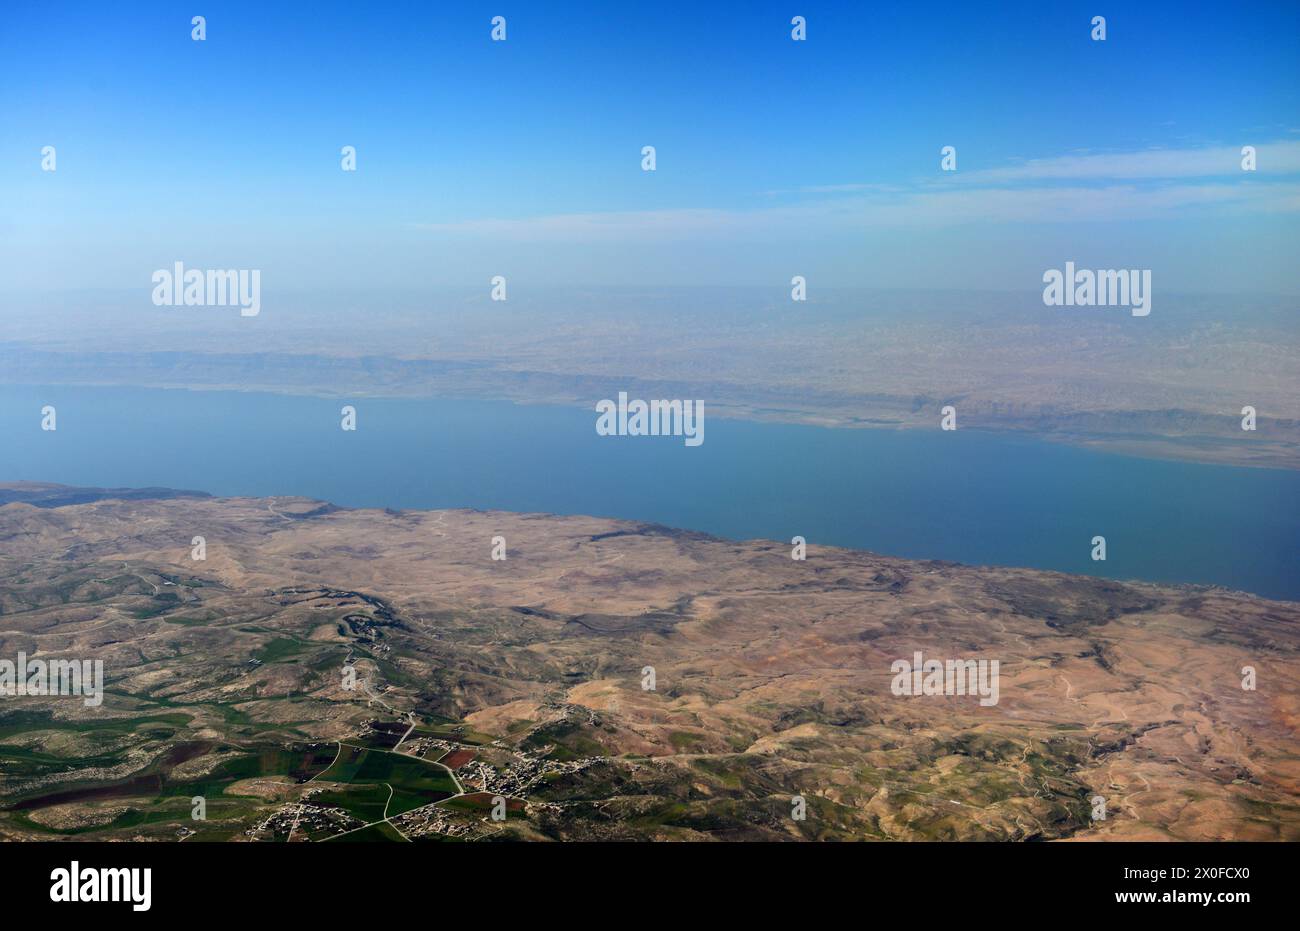 Una vista aerea del Mar morto vista dalla Giordania. Foto Stock